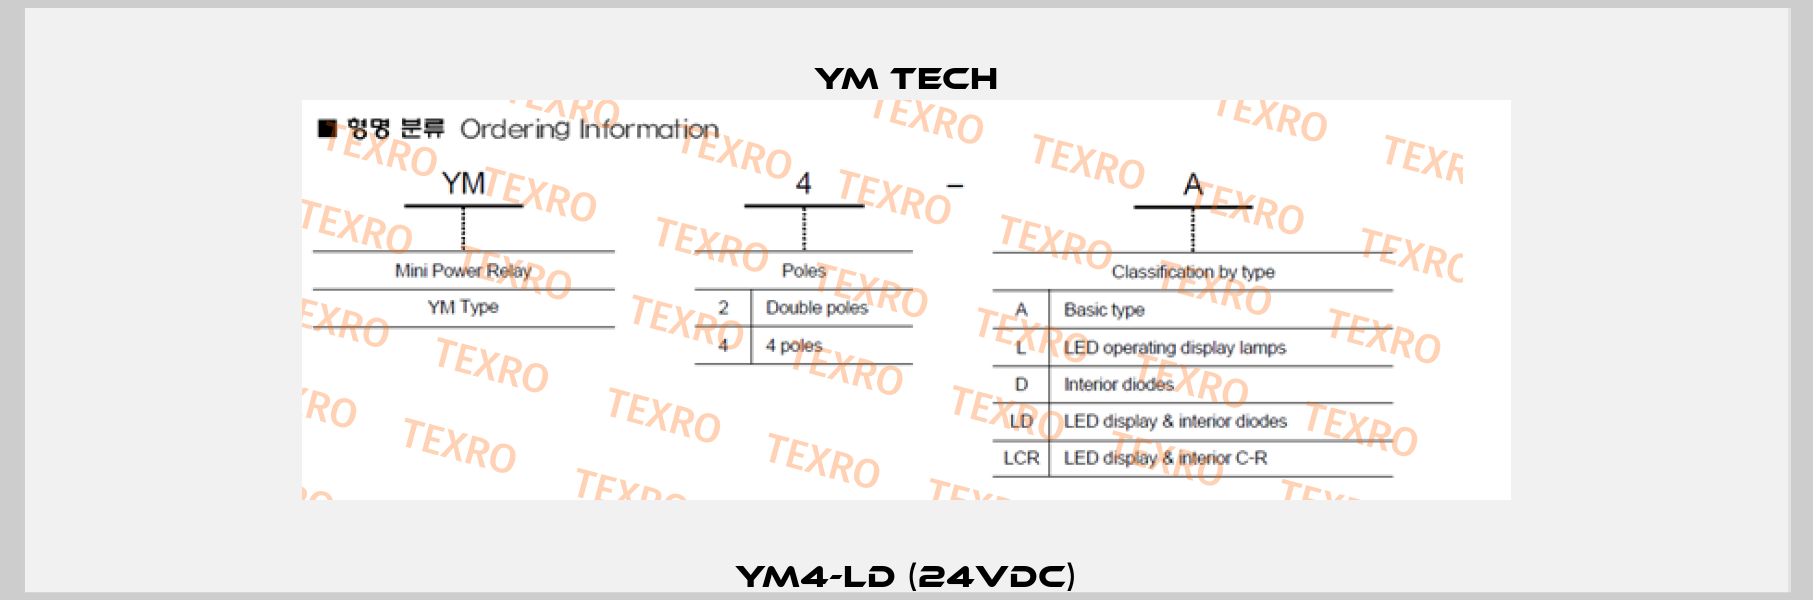 YM4-LD (24VDC) YM TECH